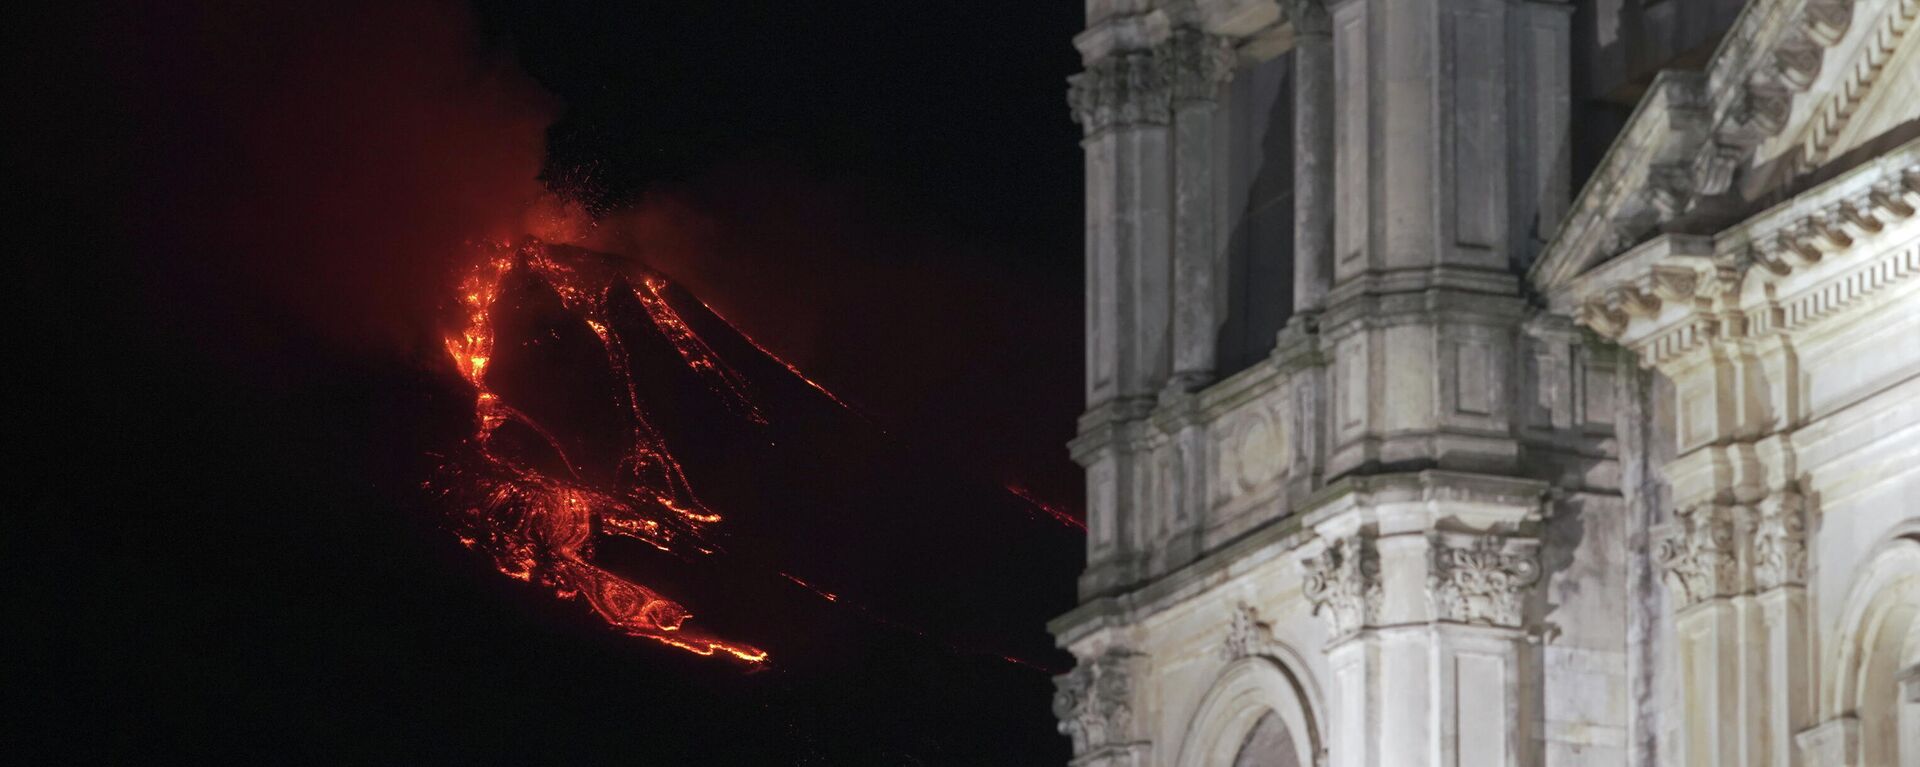 Volcán italiano Etna entra en erupción - Sputnik Mundo, 1920, 22.02.2021